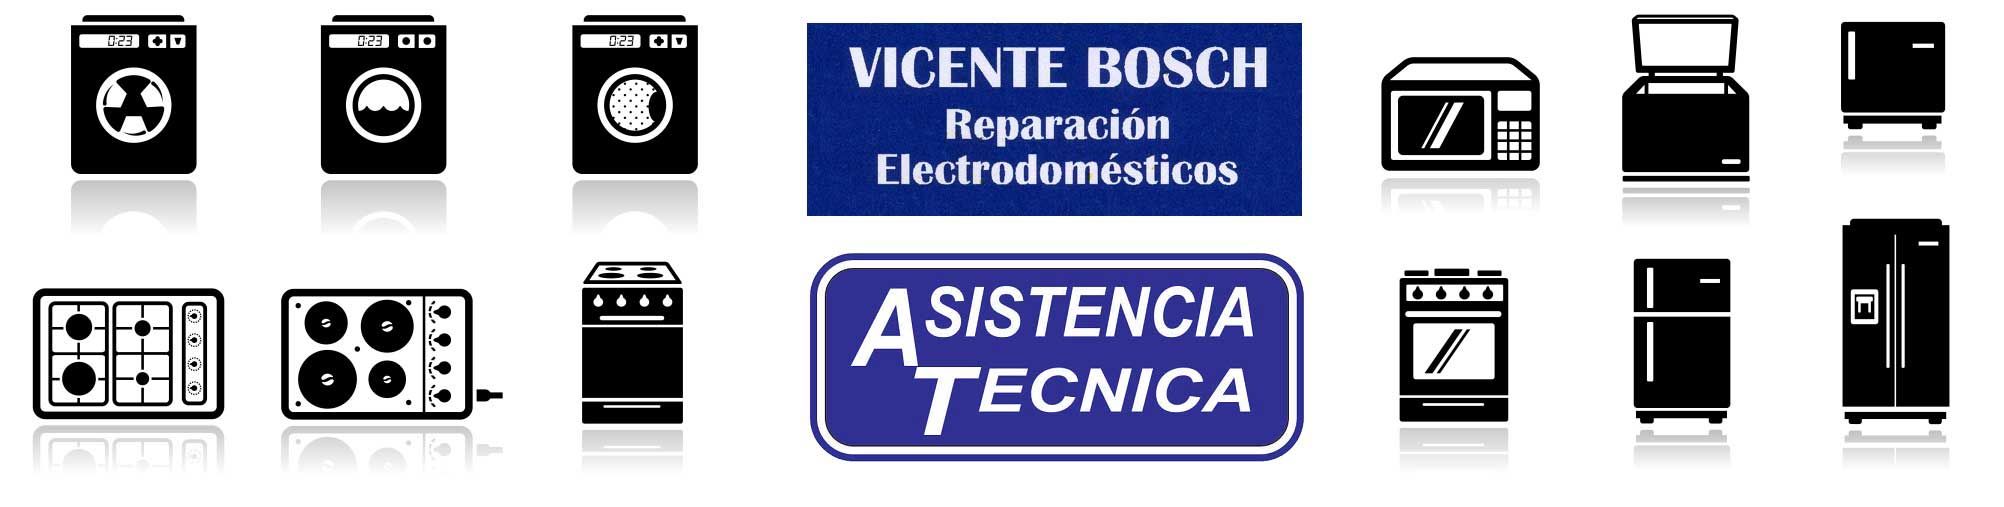 Reparaciones Vicente Bosch electrodomésticos 3 